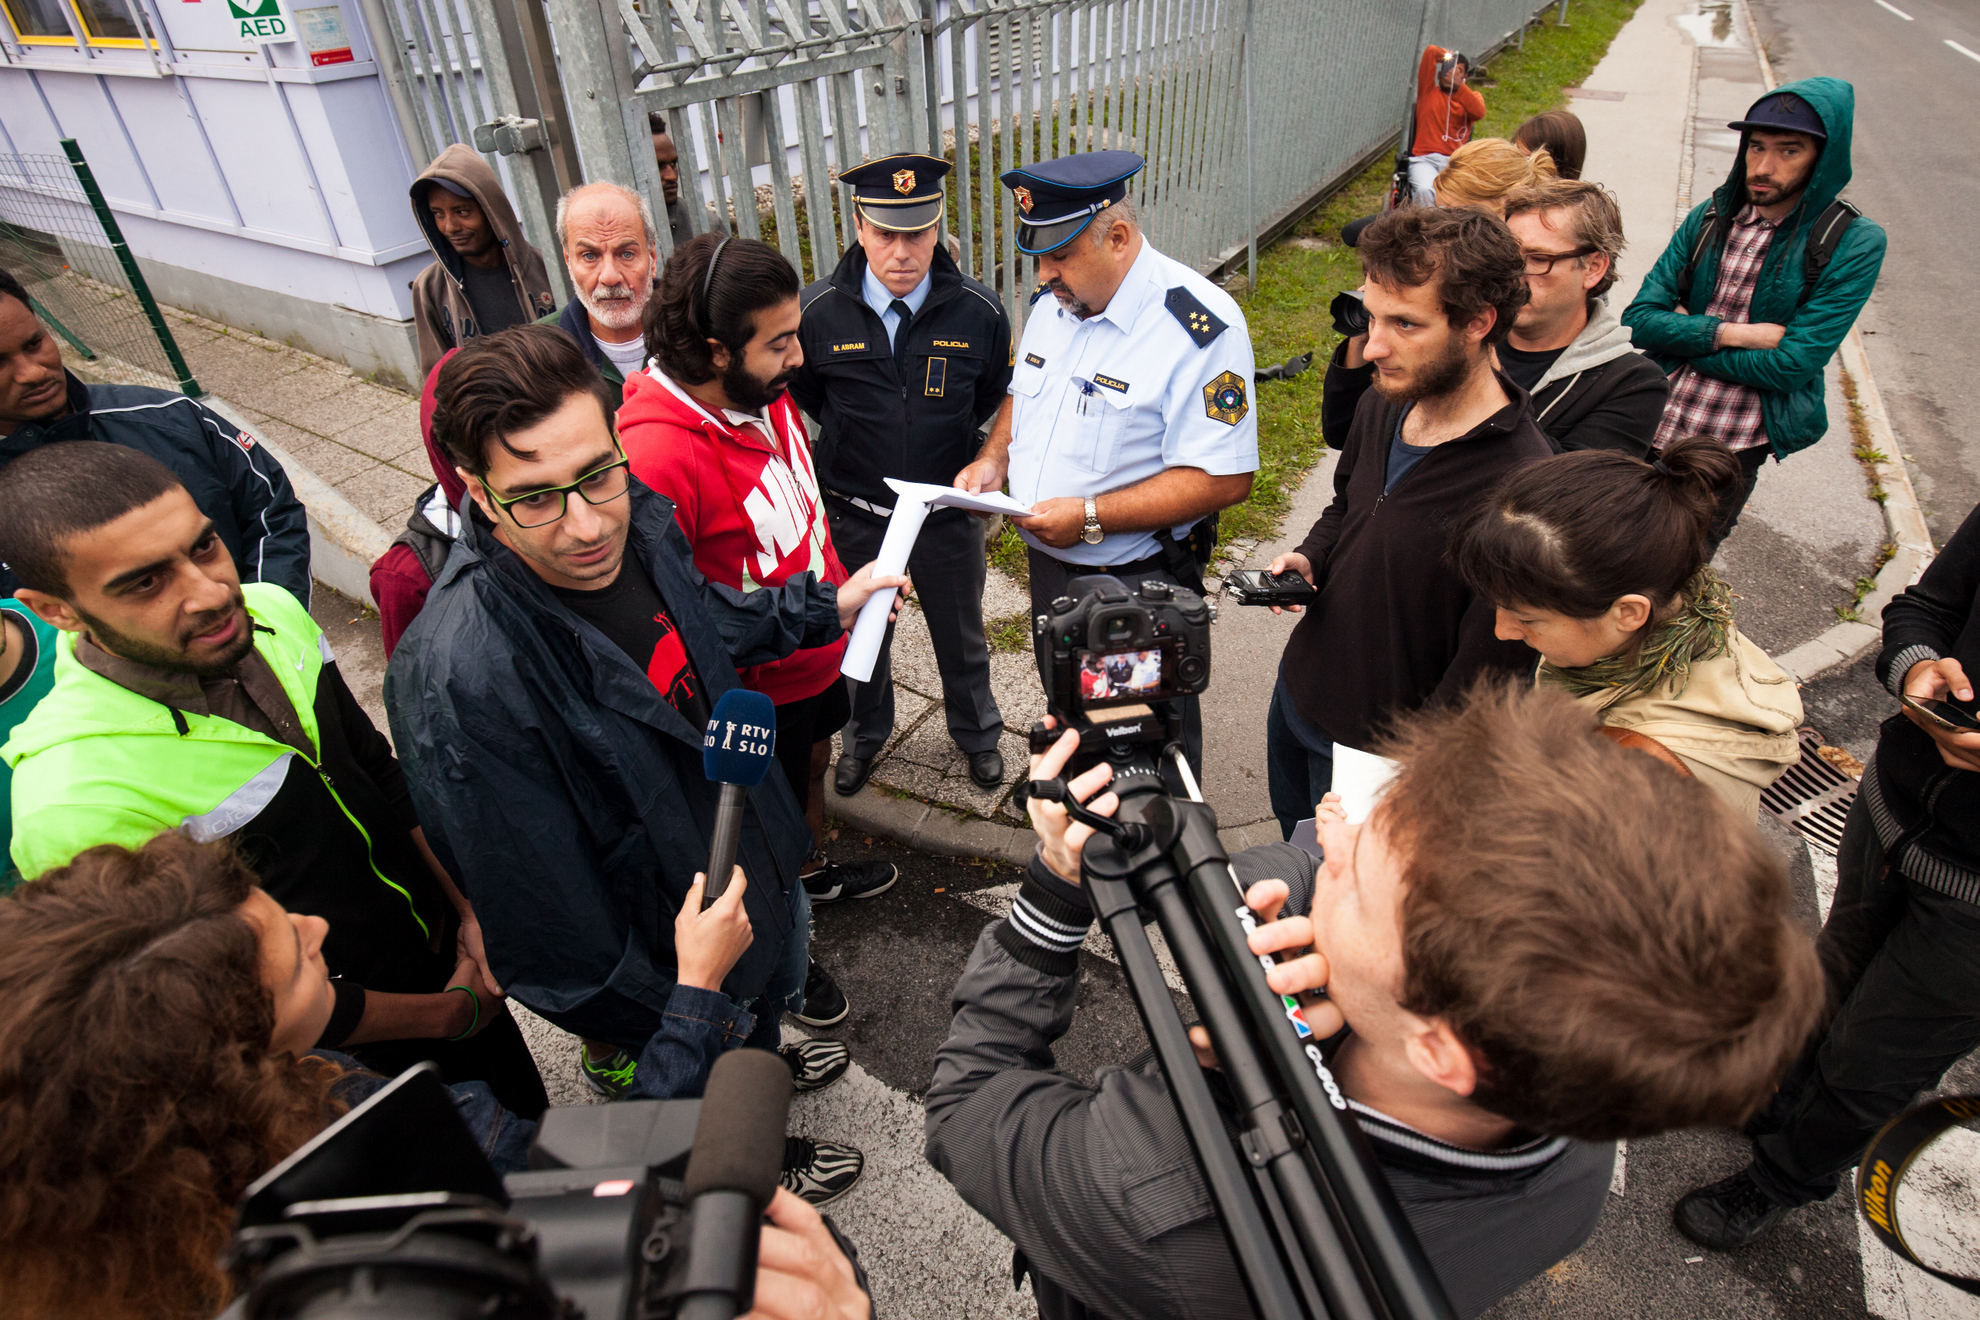 19.09.2016 Ljubljana, Azilni dom Vič. Protest beguncev v azilnem domu. Zaposlenim niso pustili z avtom na parkirišče.